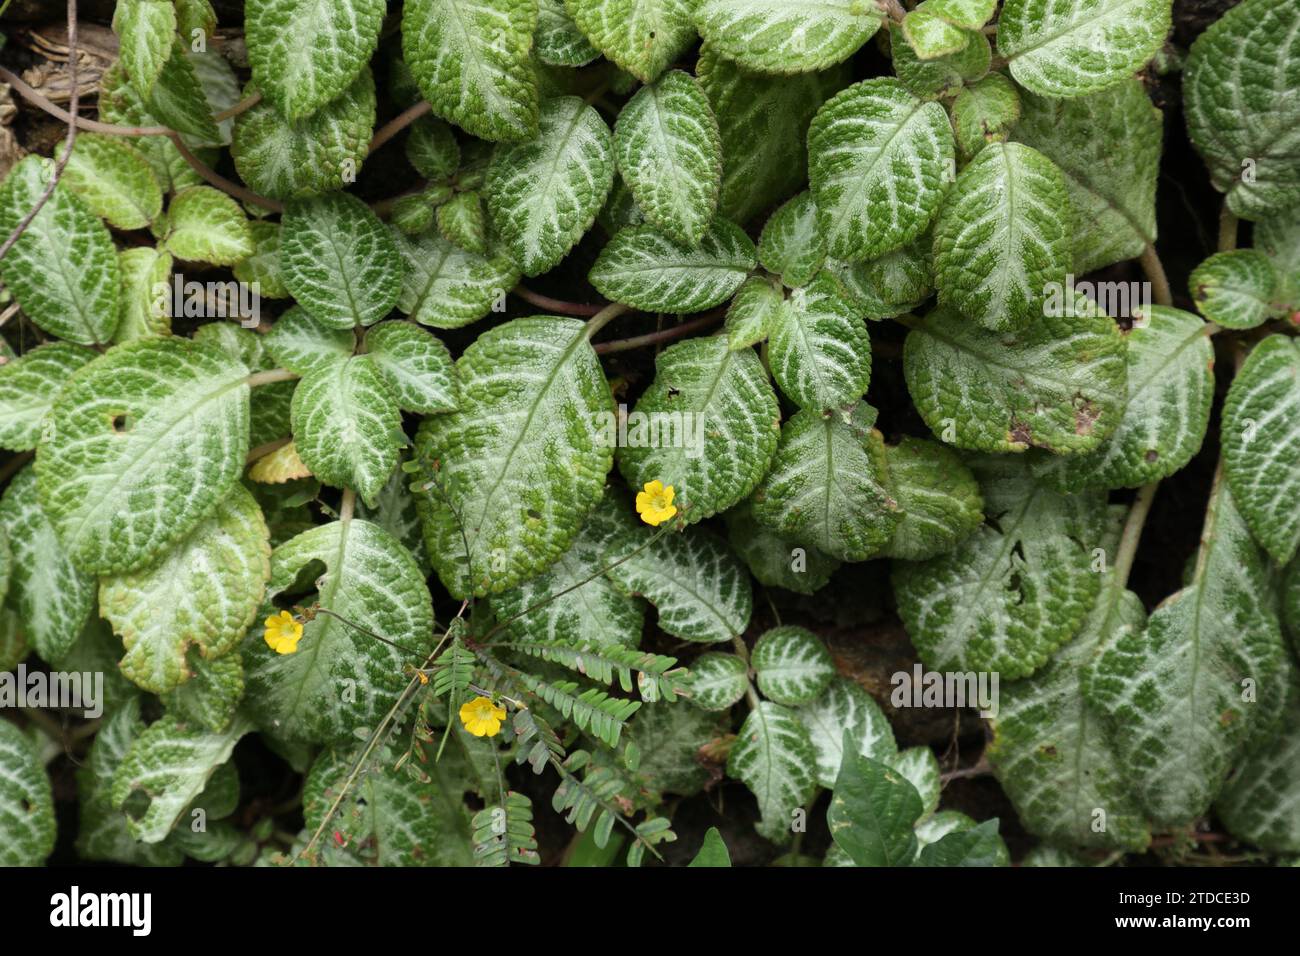 Blick auf die winzigen gelben Blüten einer Reinwardt-Baumpflanze (Biophytum Reinwardtii), die an einer Wand mit den grünen Episcia-Pflanzen in der Ba wächst Stockfoto